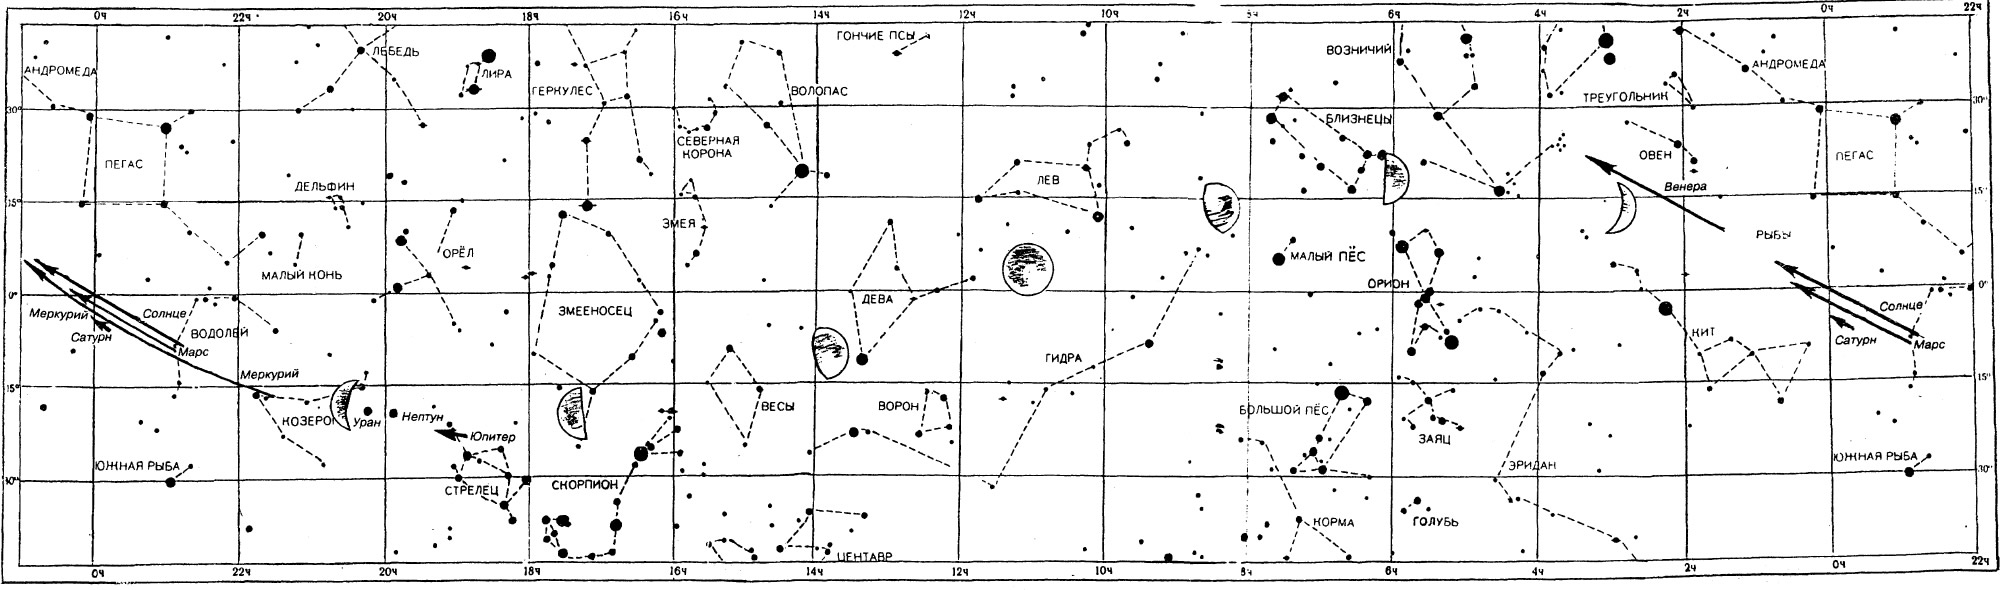 Звездная карта Март 1996